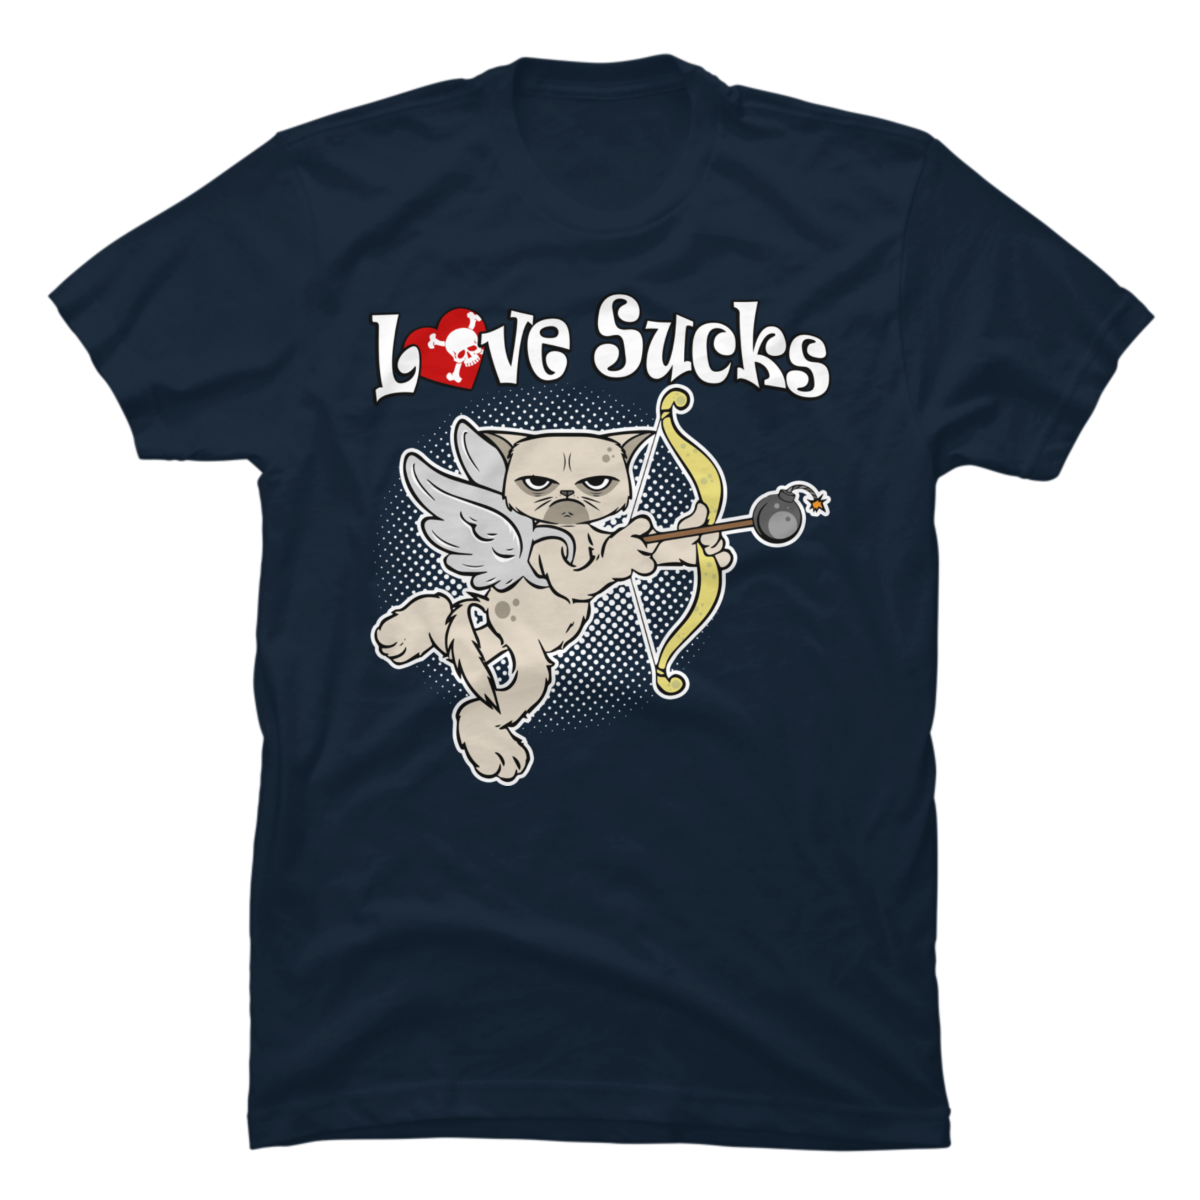 love sucks shirt